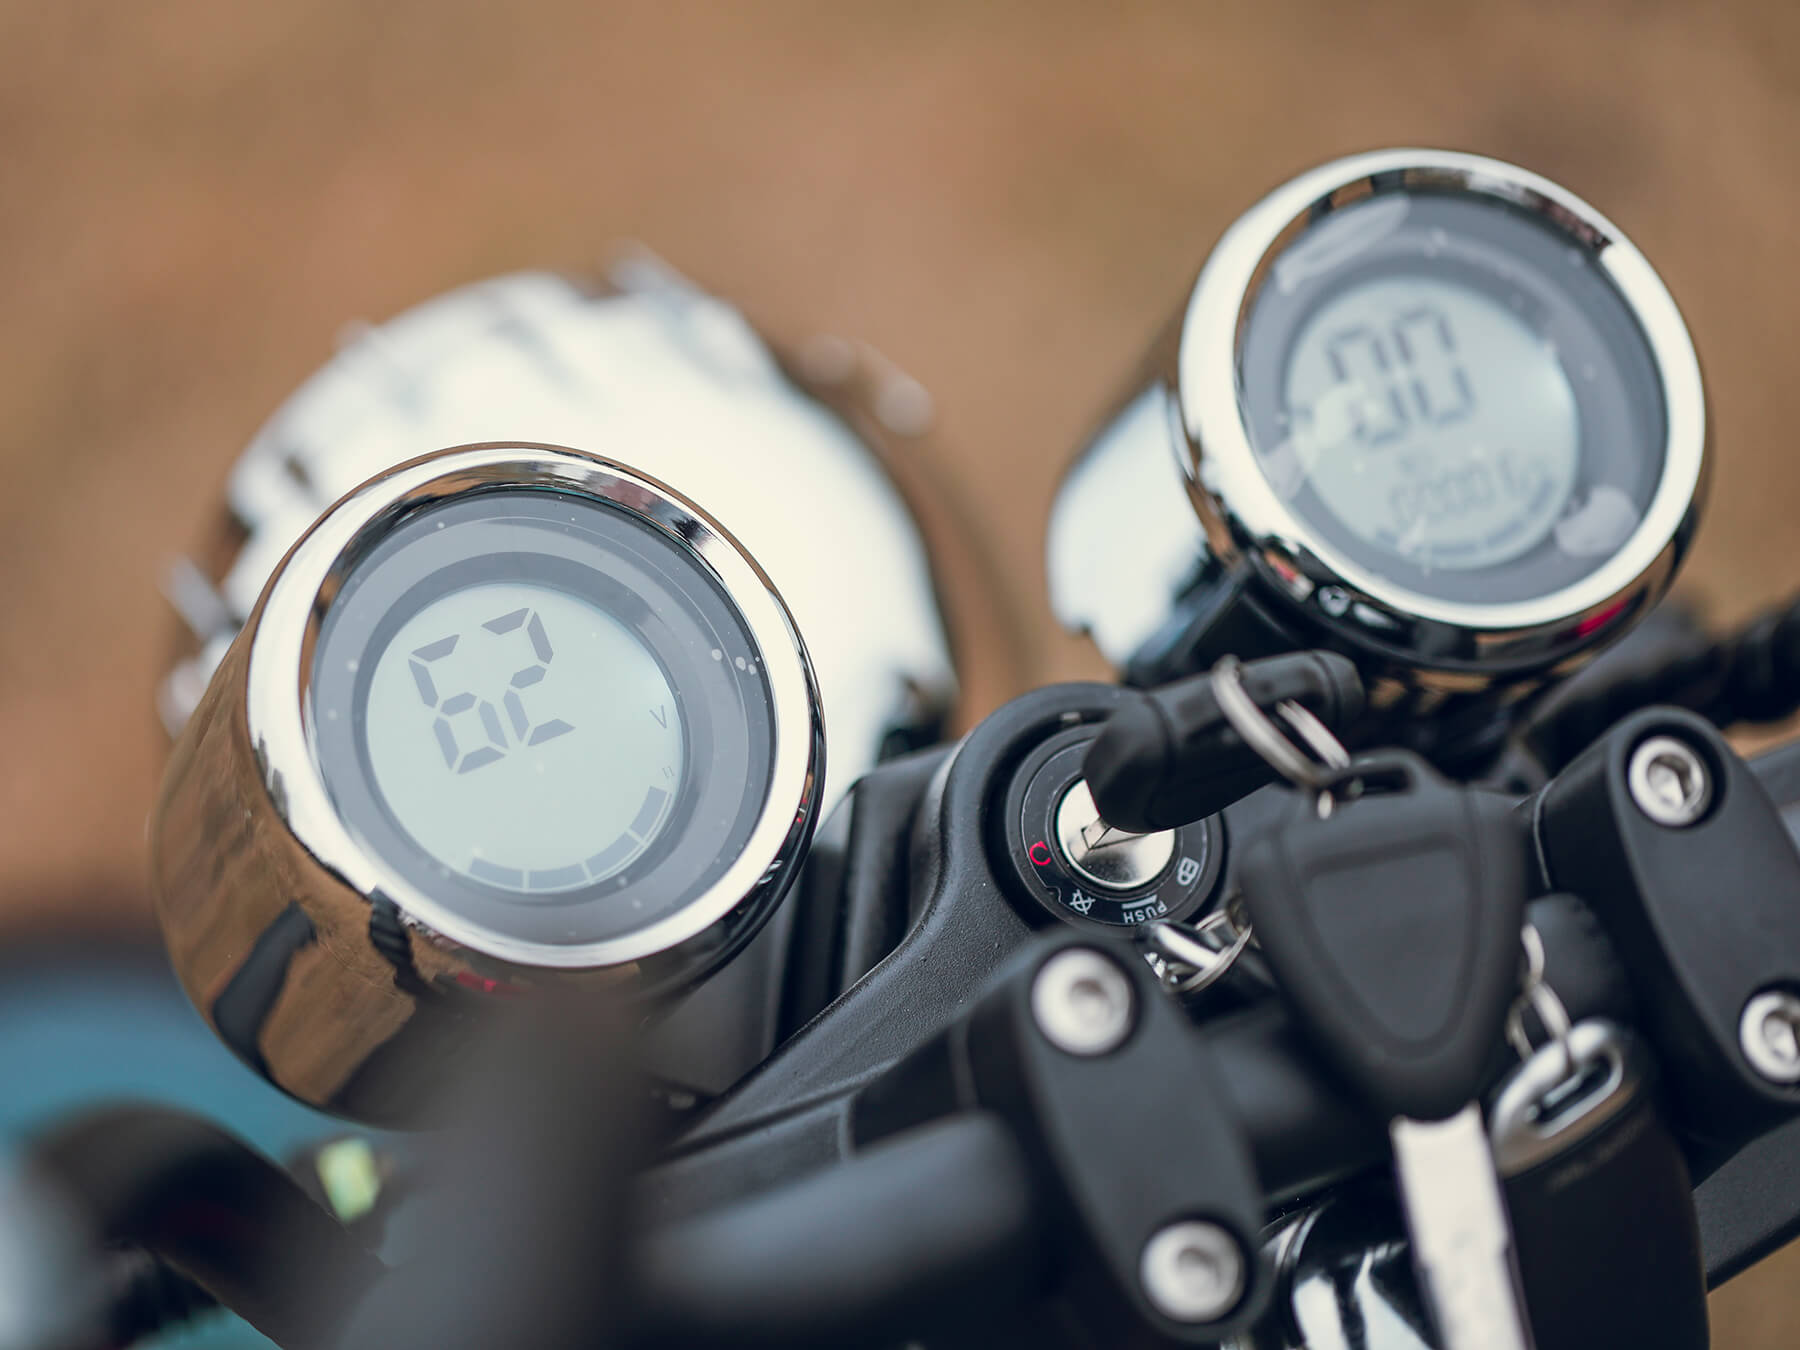 Motorcycle LCD Gauge - Dual Digital Odometer Tachometer Speedometer -Smart Display - Fat Tire Scooter - Eahora Emars M1P 